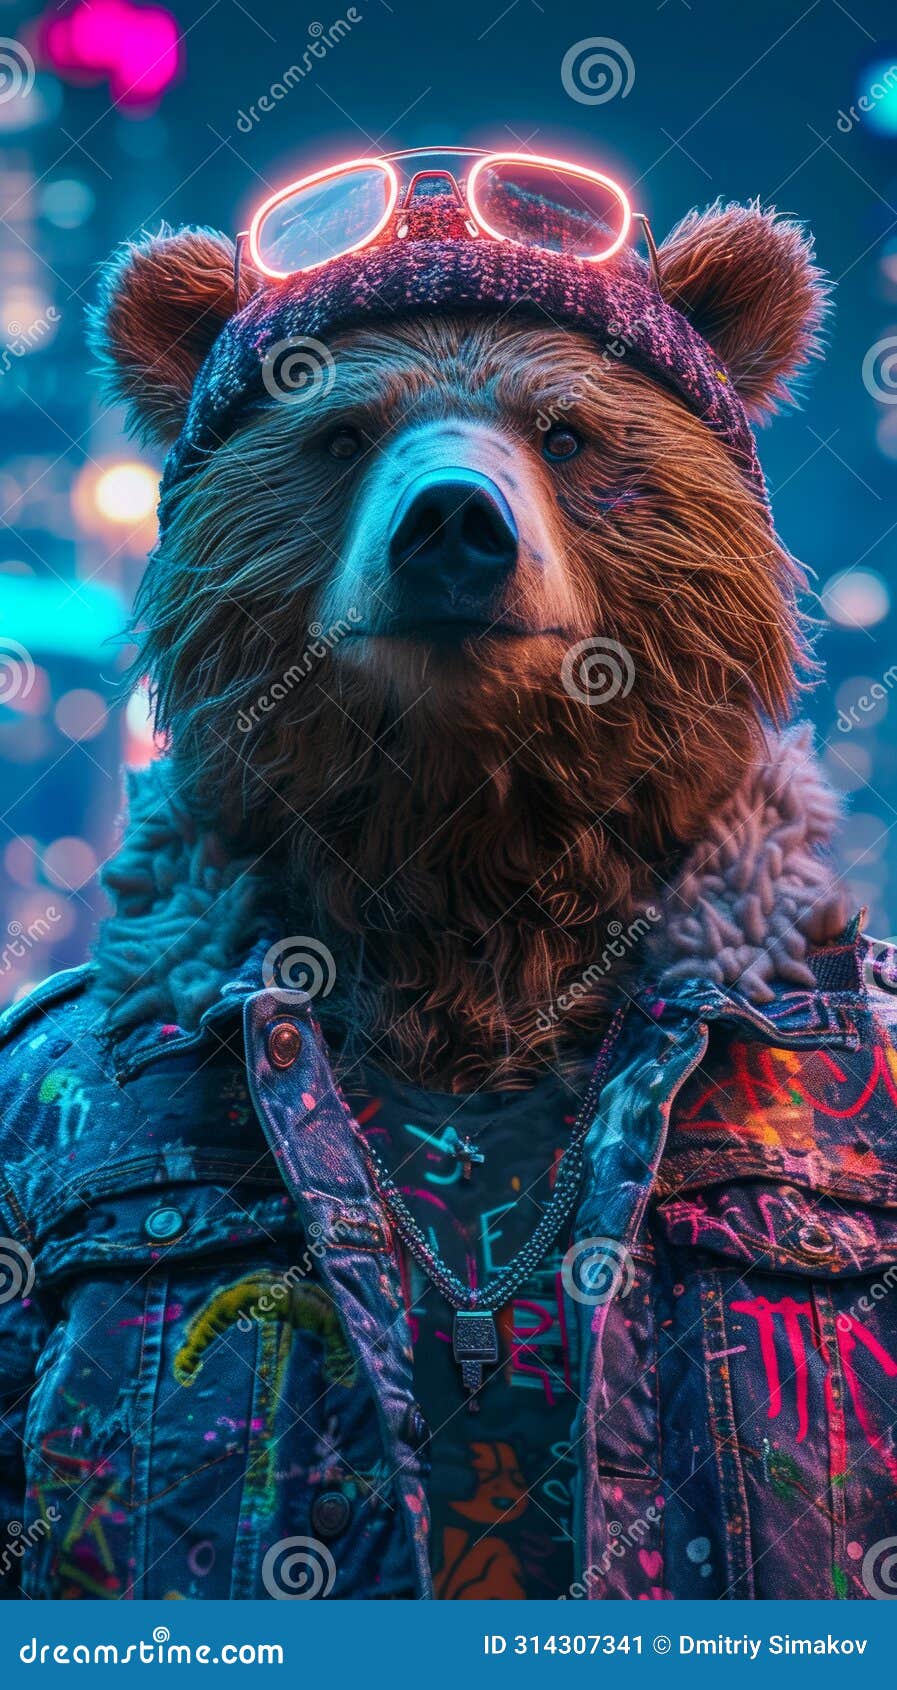 urban-cool bear in